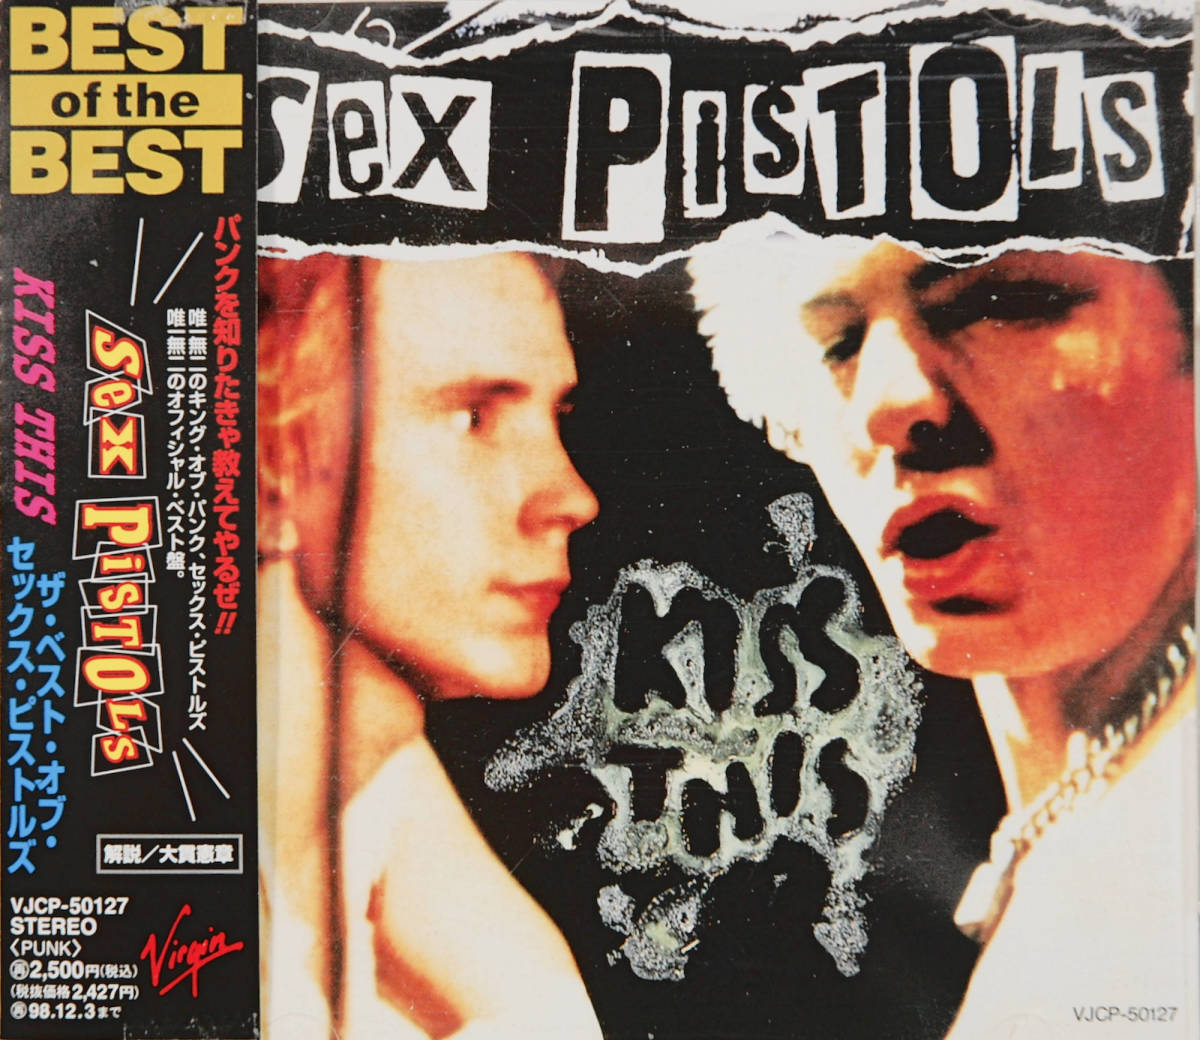 ♪SEX PISTOLS【KISS THIS～ザ・ベスト・オブ・セックス・ピストルズ】CD[国内盤]♪_画像1